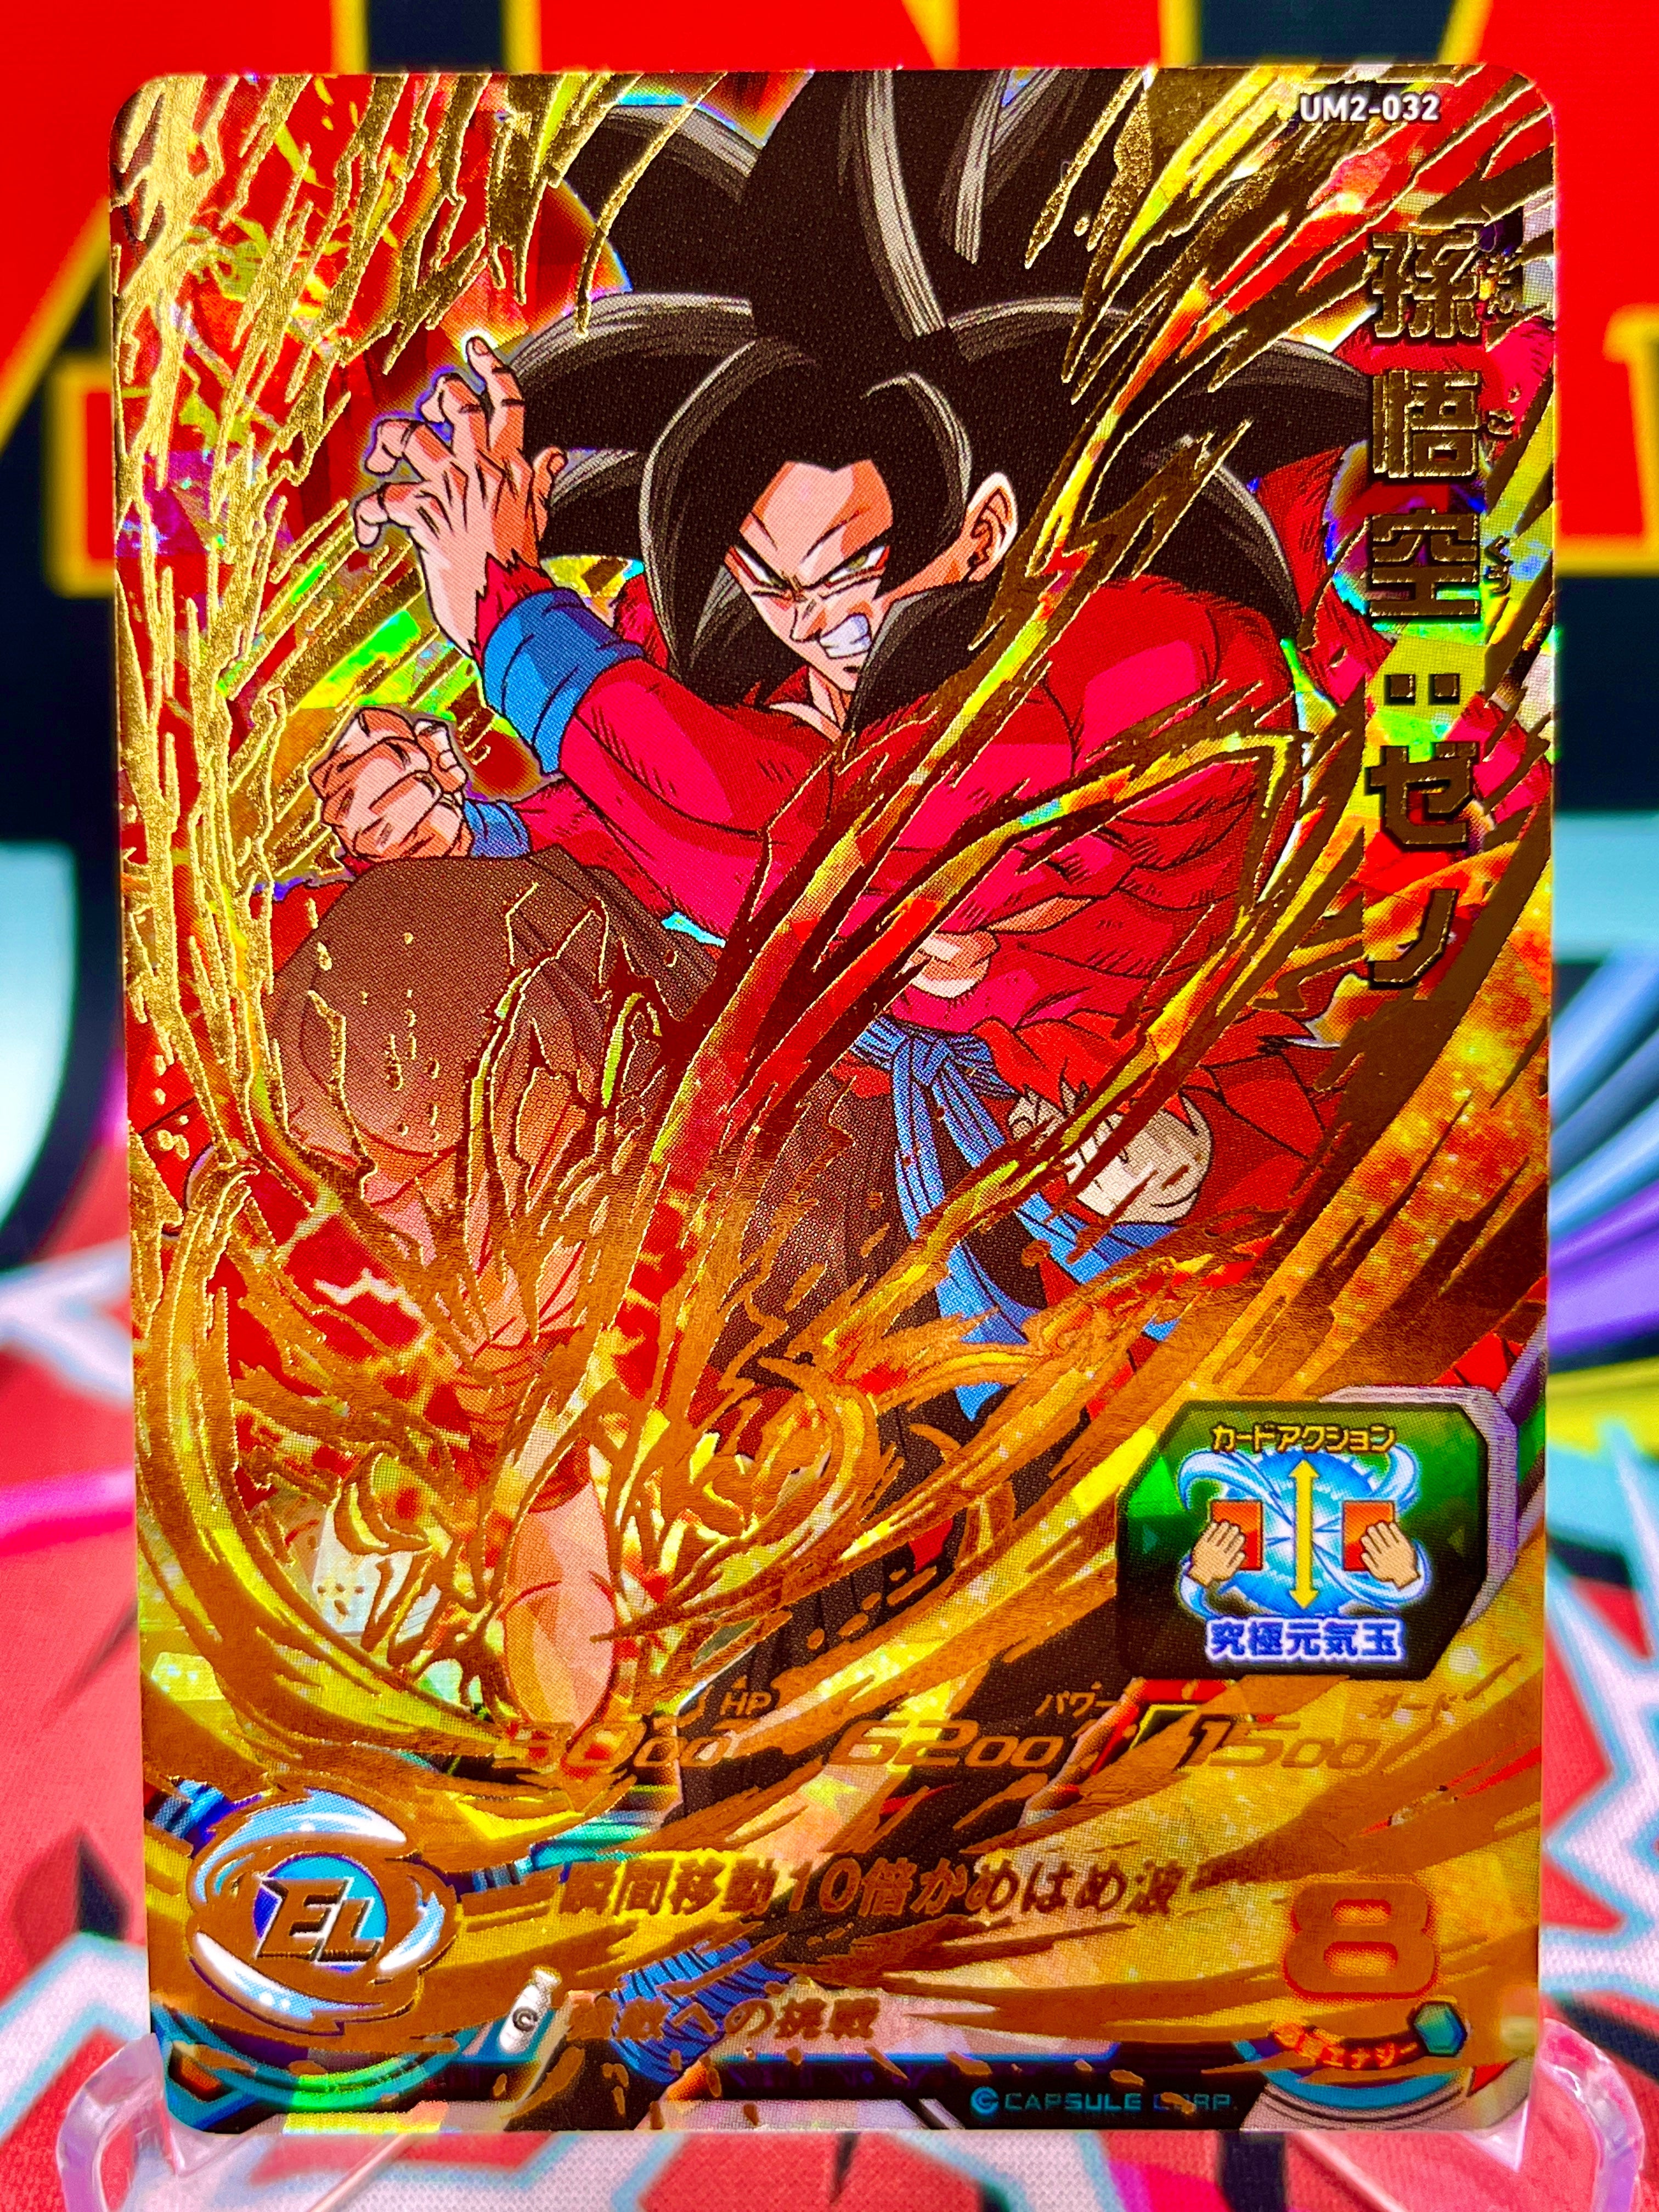 UM2-032 Son Goku: Xeno UR (2018)